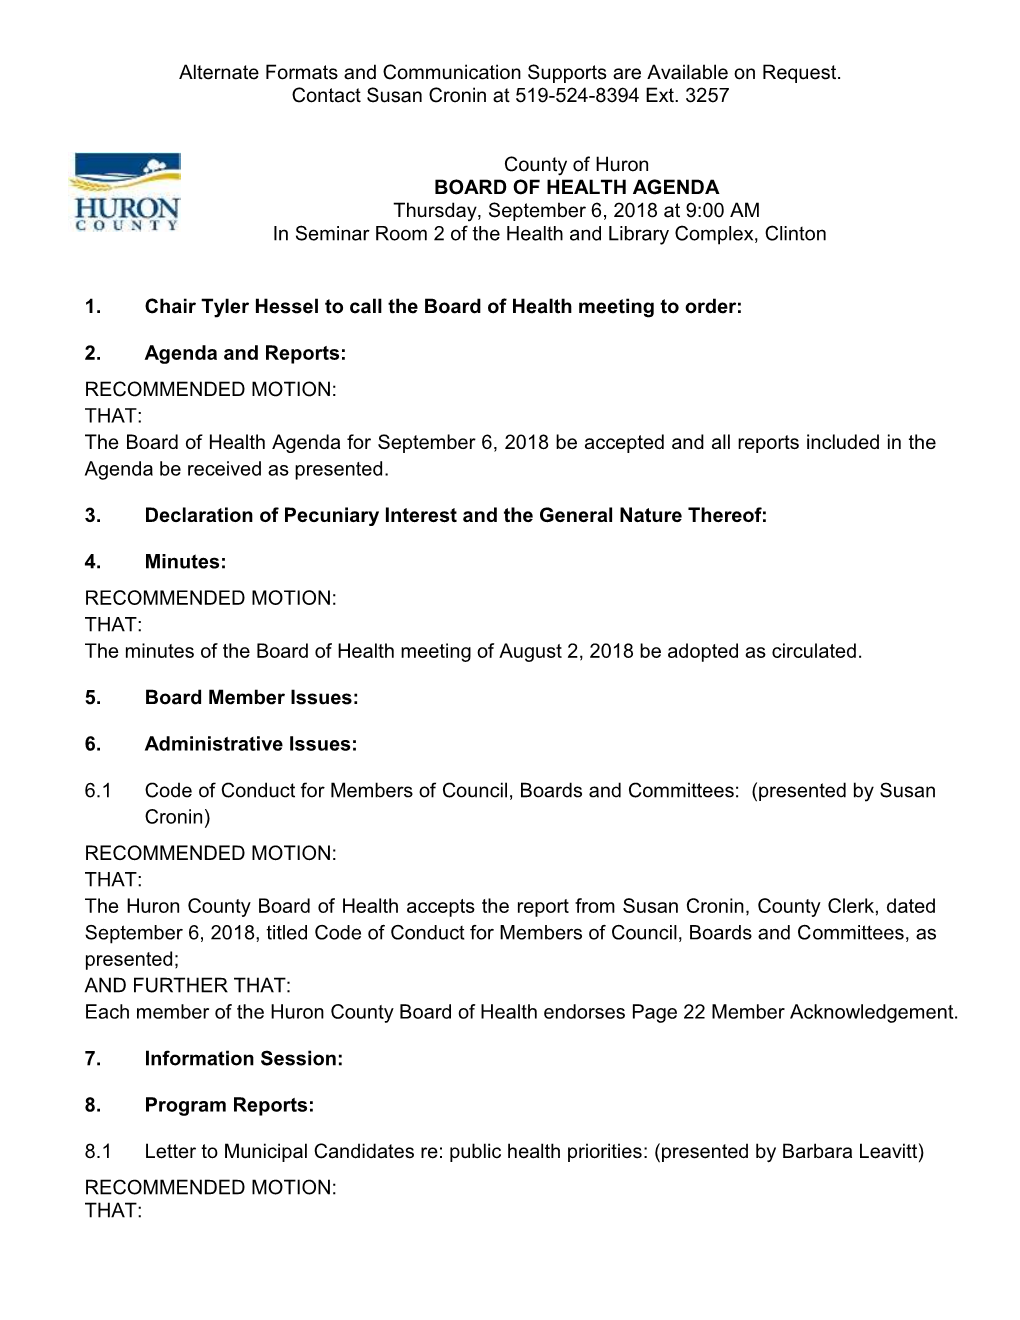 County of Huron Board of Health Agenda: April 7, 2016